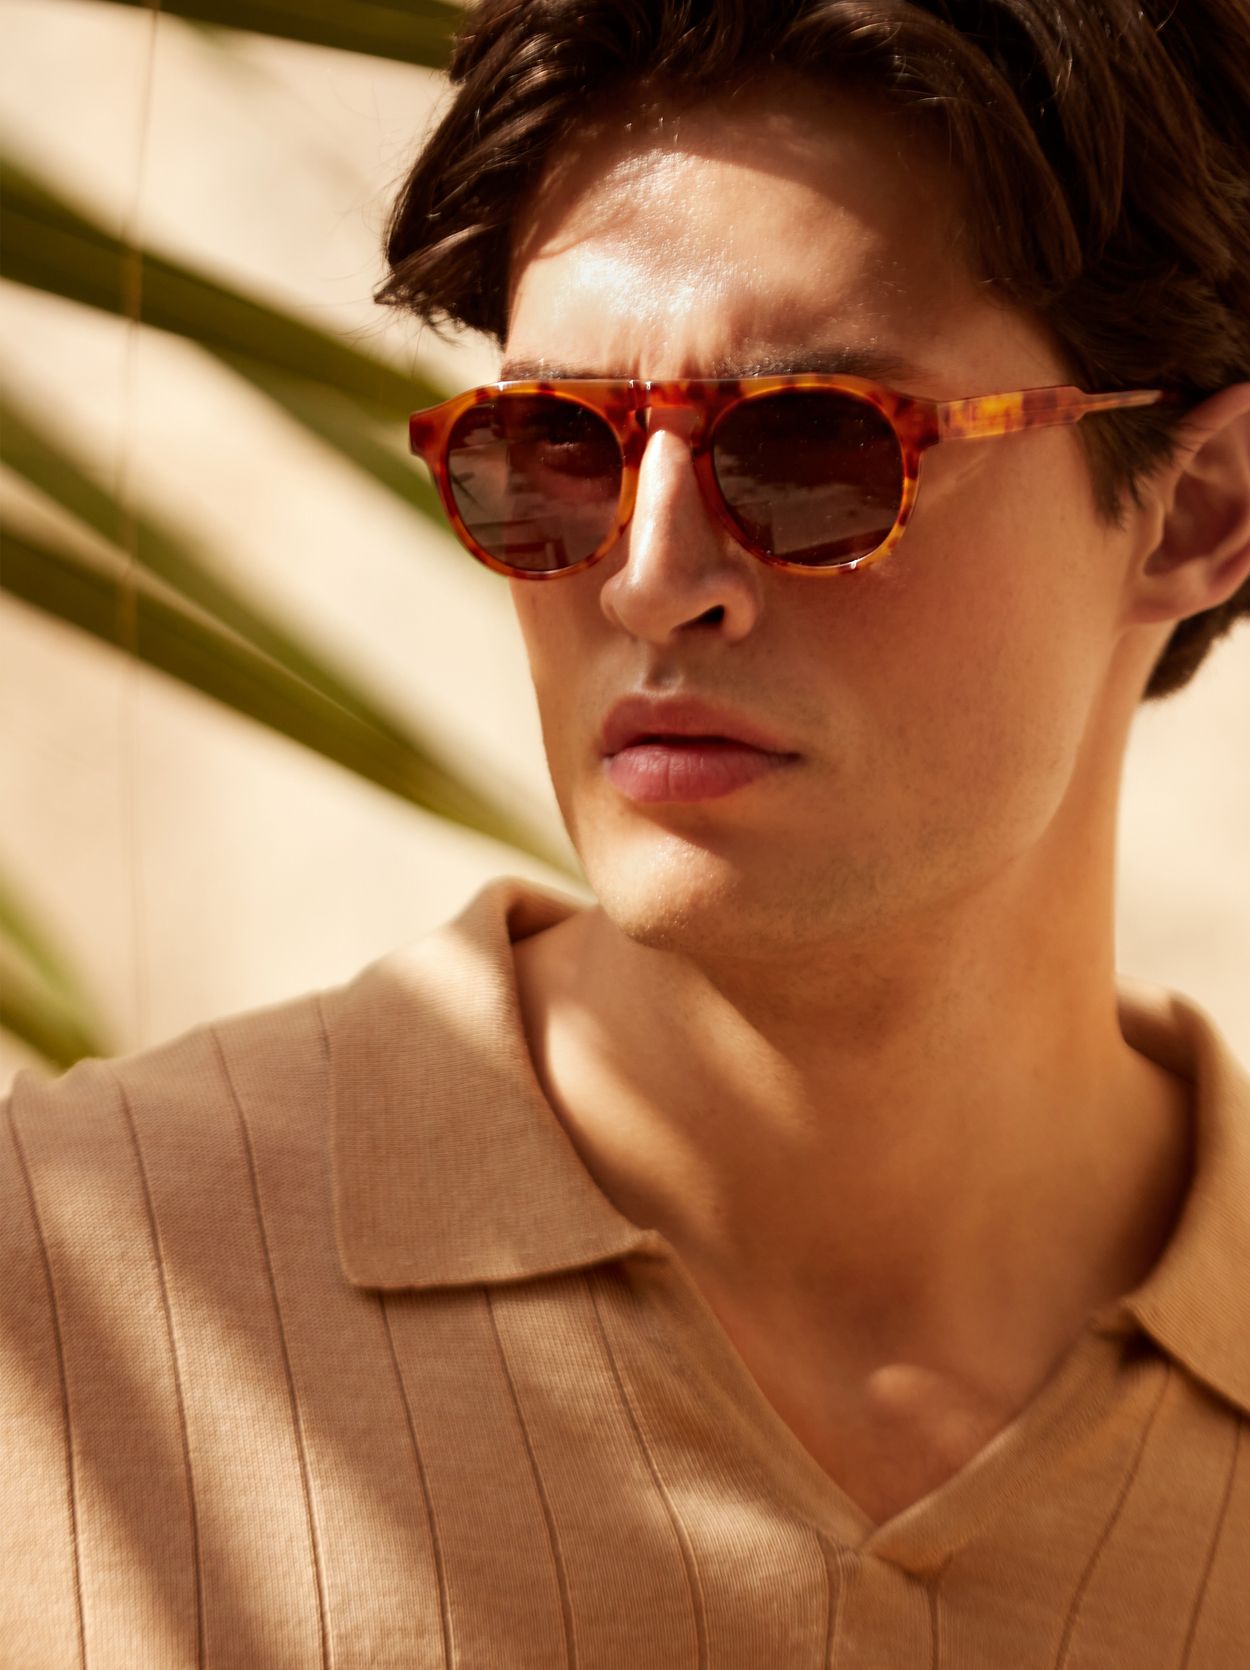 Sunglasses Marbella